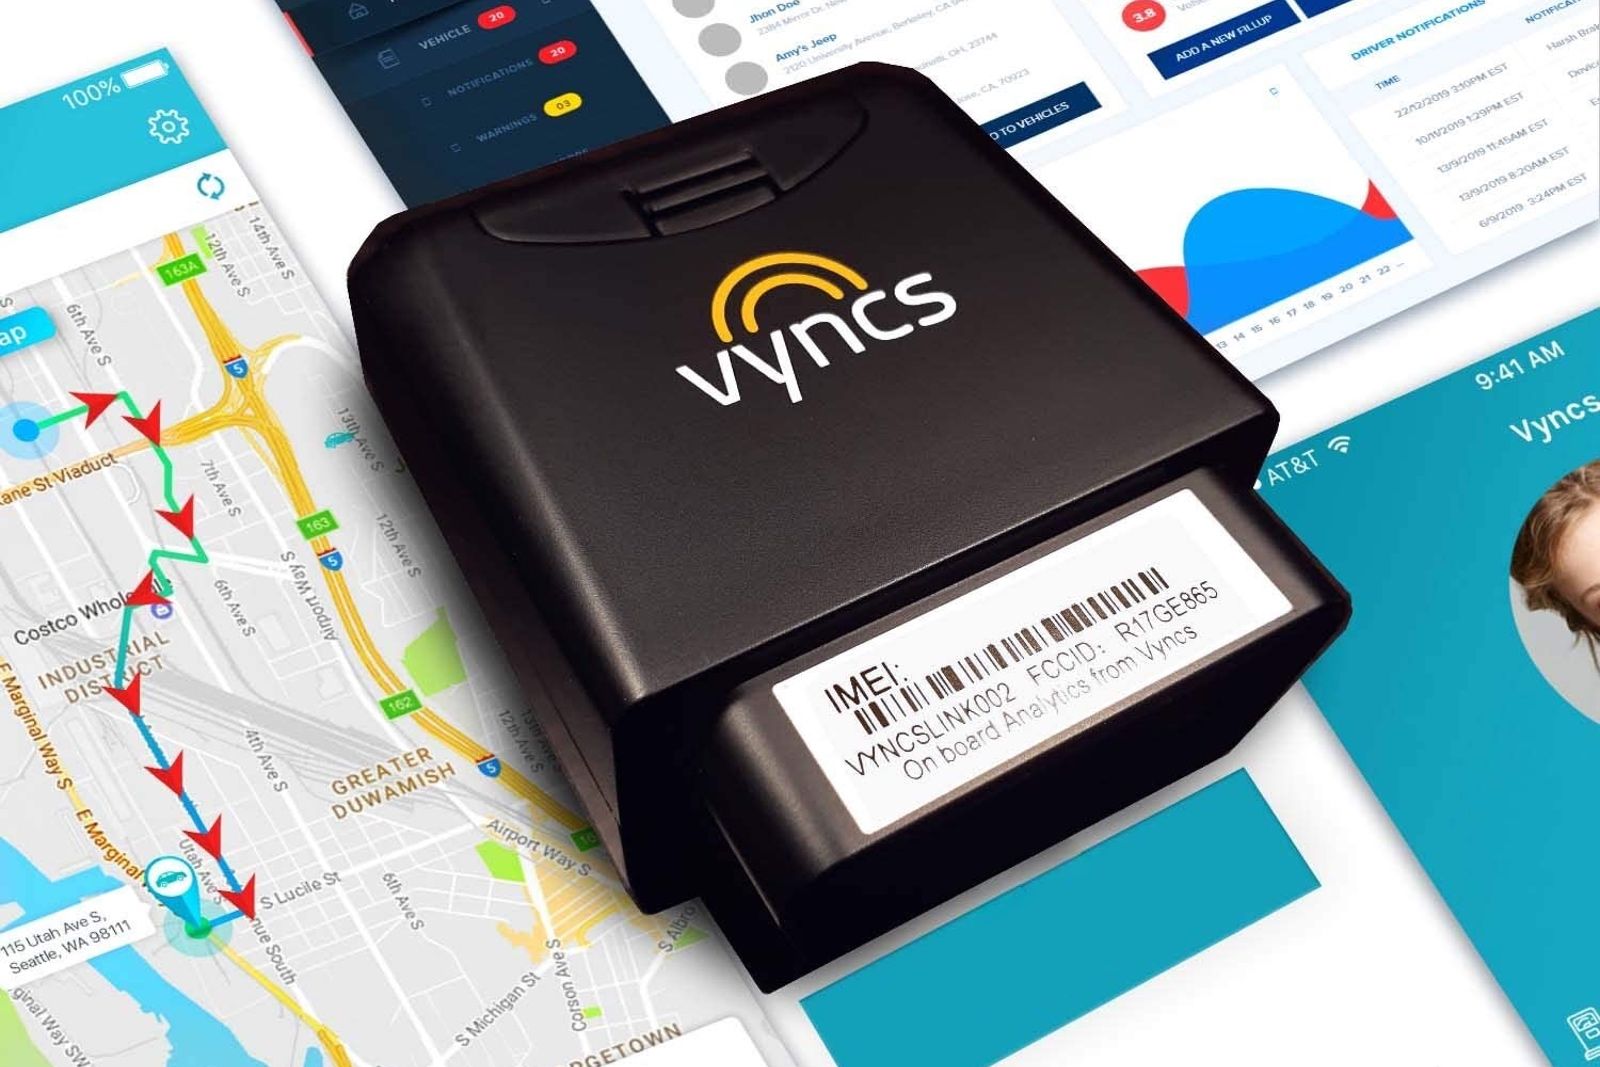 Este pequeño GPS magnético puede ayudarte a encontrar tu coche si